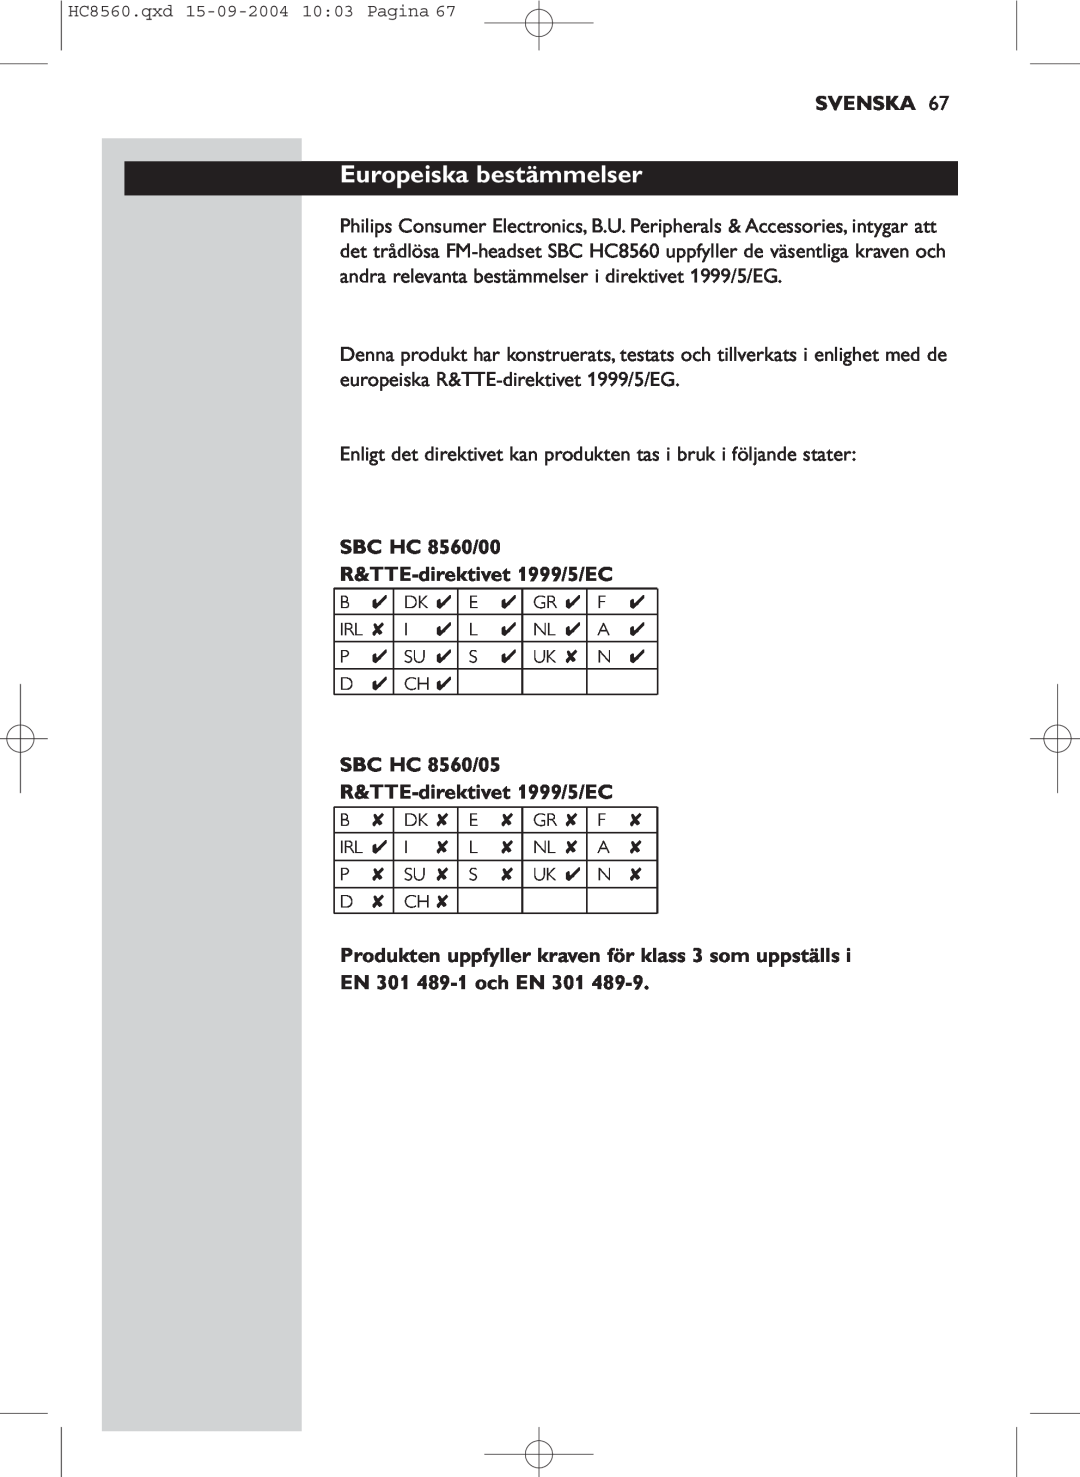 Philips manual Europeiska bestämmelser, Svenska, SBC HC 8560/00 R&TTE-direktivet1999/5/EC, EN 301 489-1och EN 301 